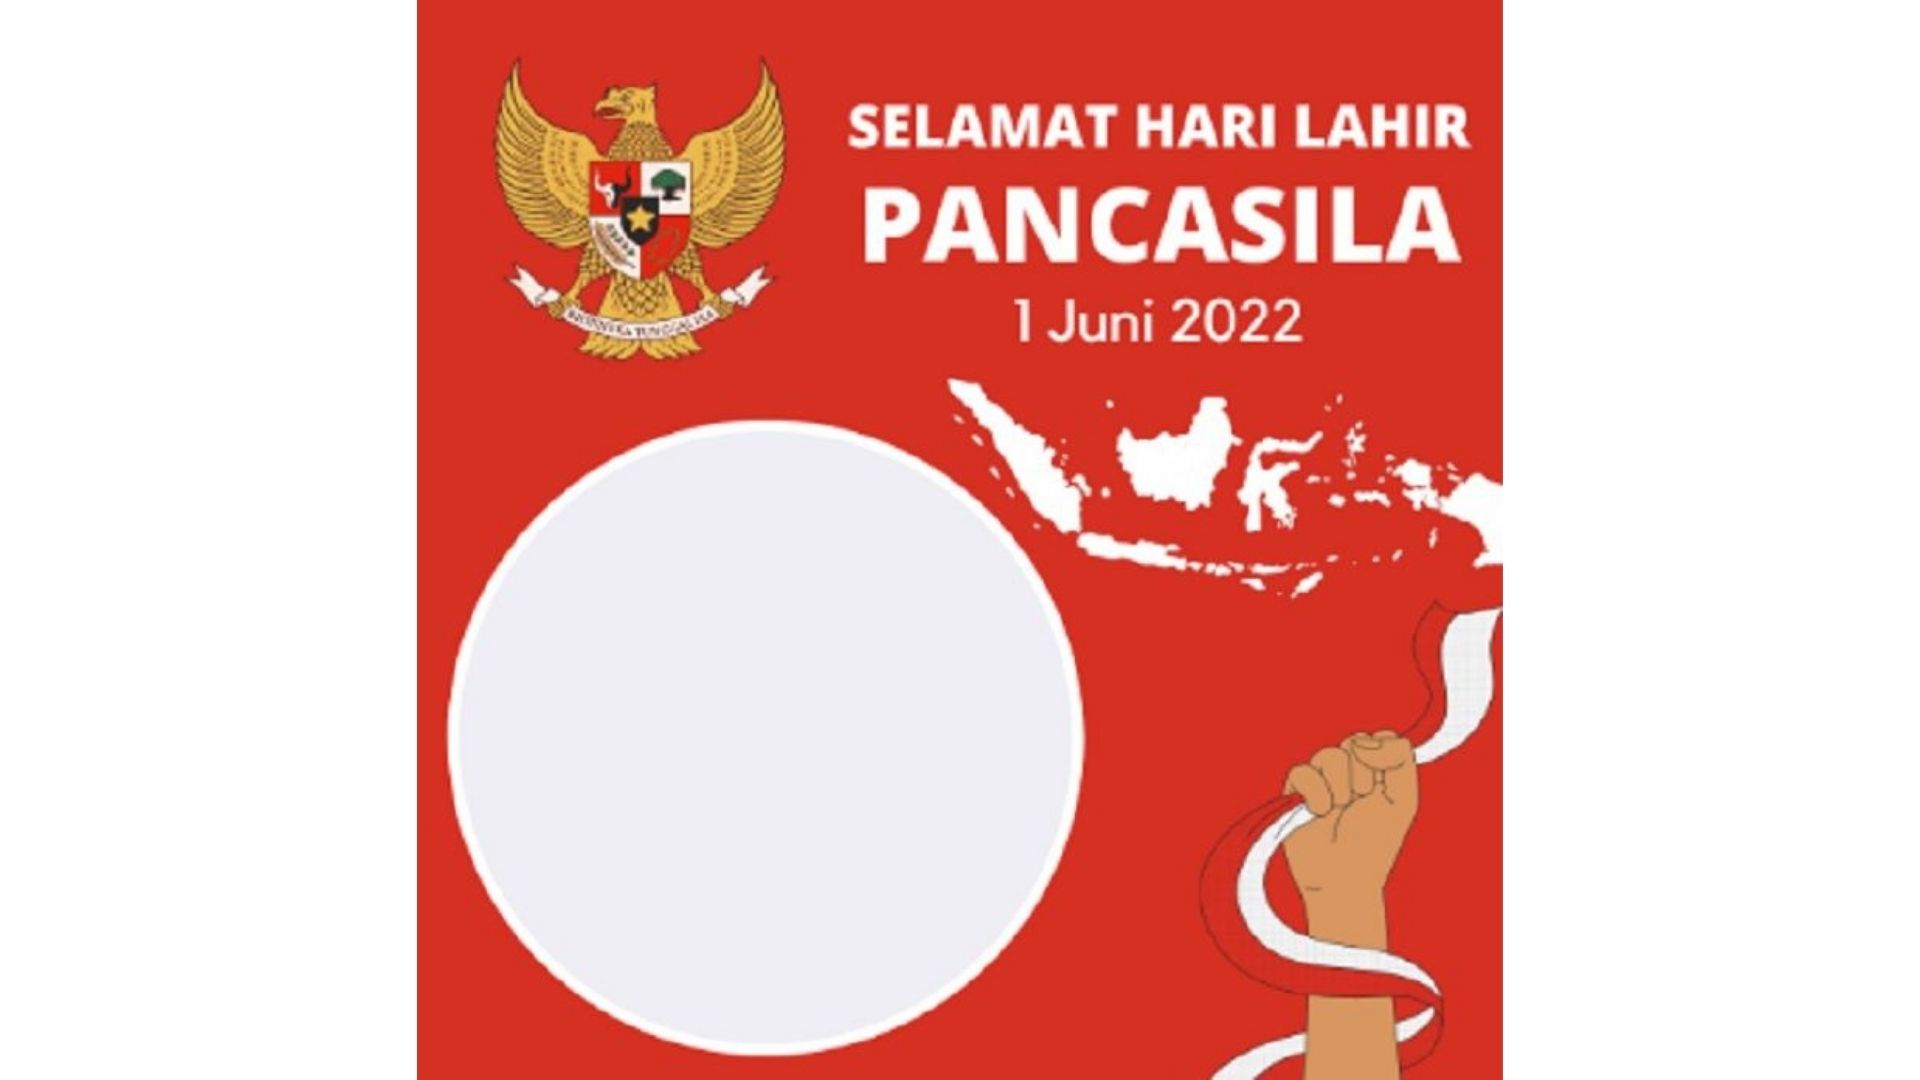 Link Twibbon Terbaru Hari Lahir Pancasila 2022